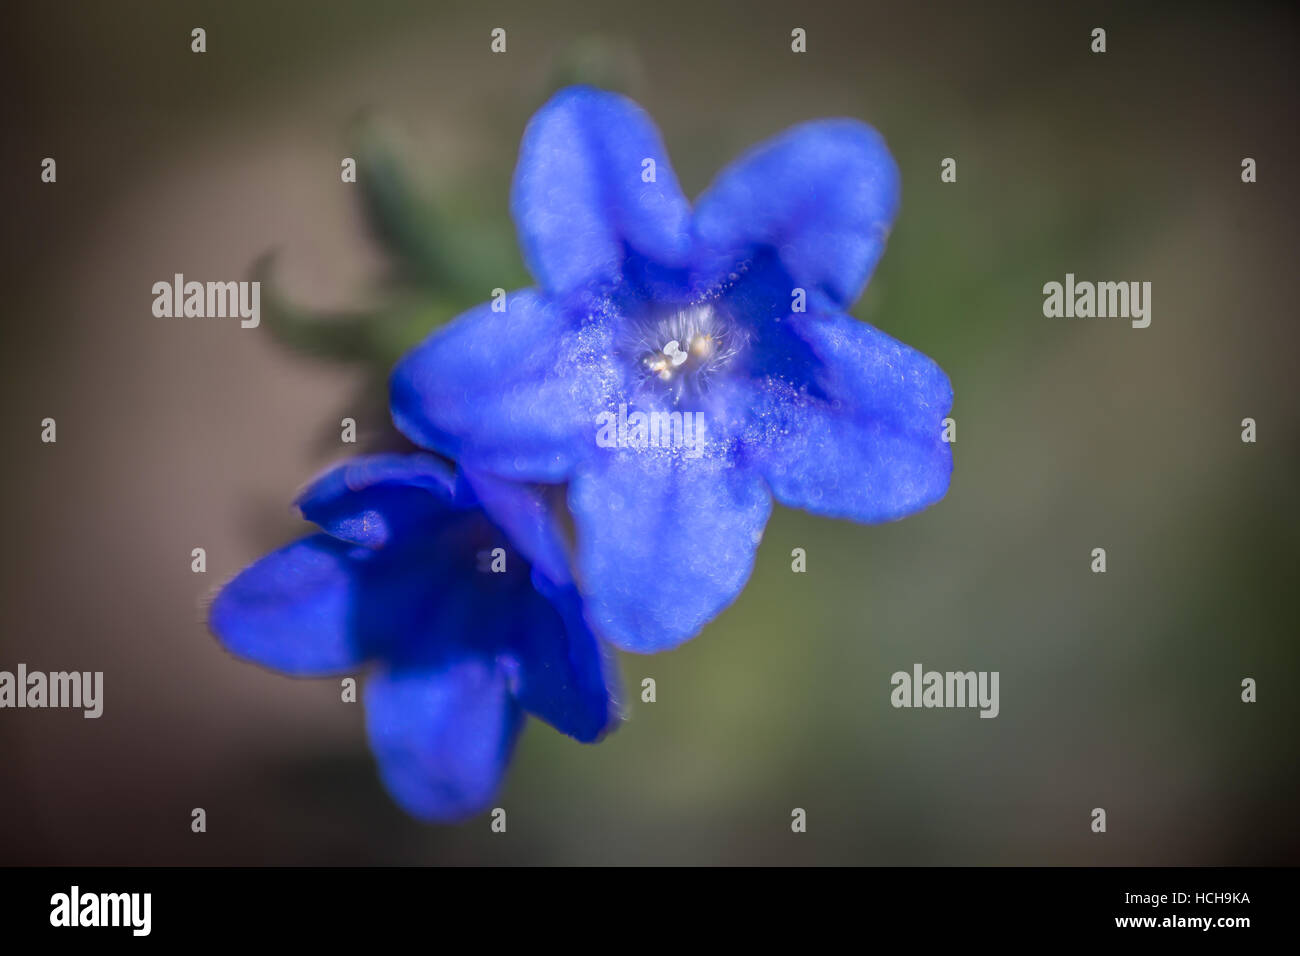 Par de pequeñas flores de color azul con cinco pétalos en forma de estrella con poca profundidad de campo. Foto de stock